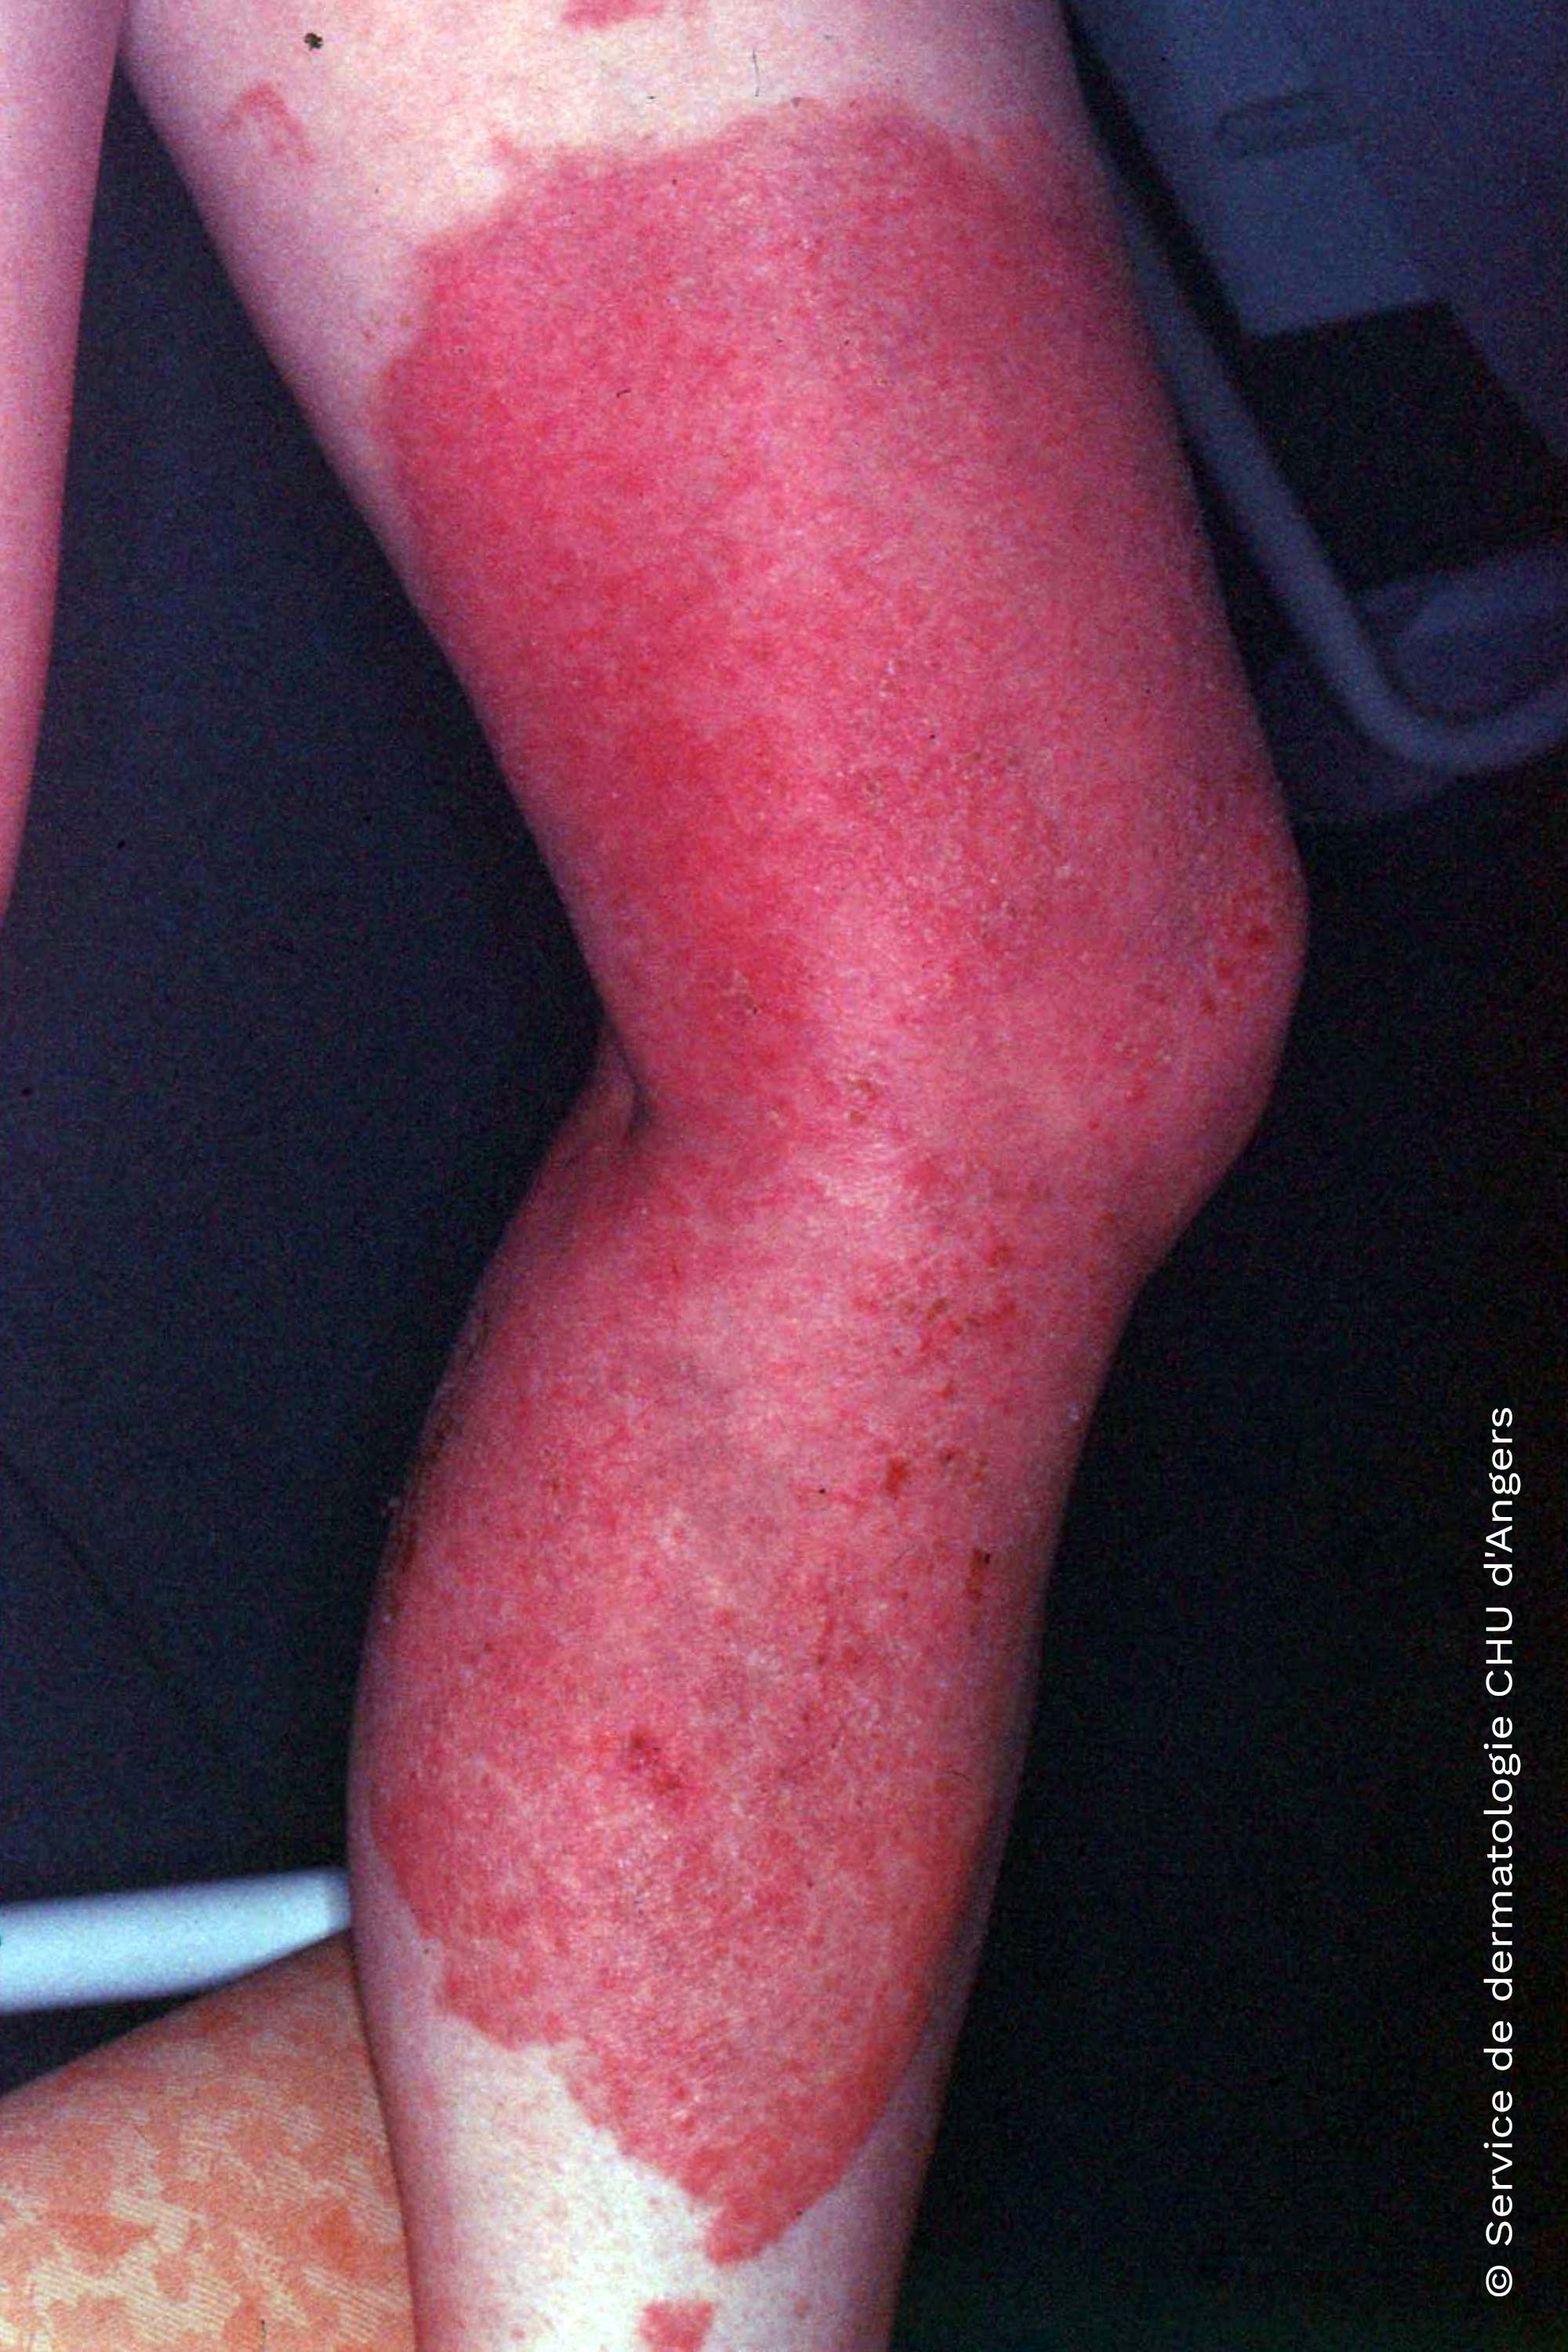 Eczema de contacto fotoalérgico debido al ketoprofeno